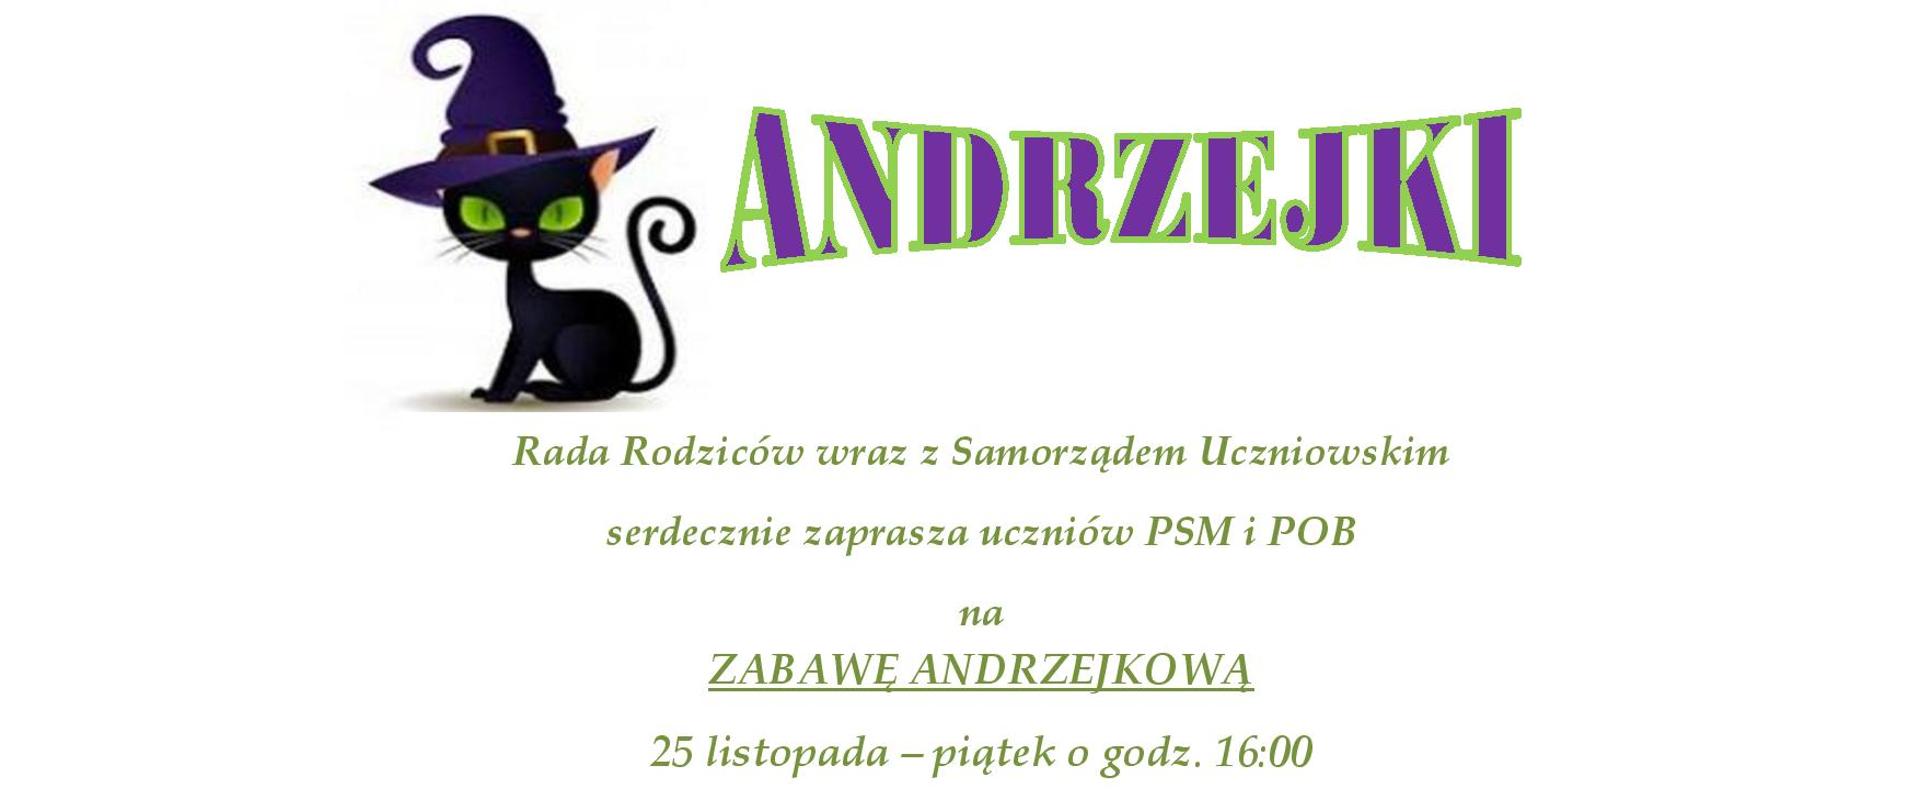 Ogłoszenie przedstawia informacje dotyczącą Andrzejek organizowanych przez Radę Rodziców i Samorząd uczniowski 25 listopada 2022 r. o godz. 16